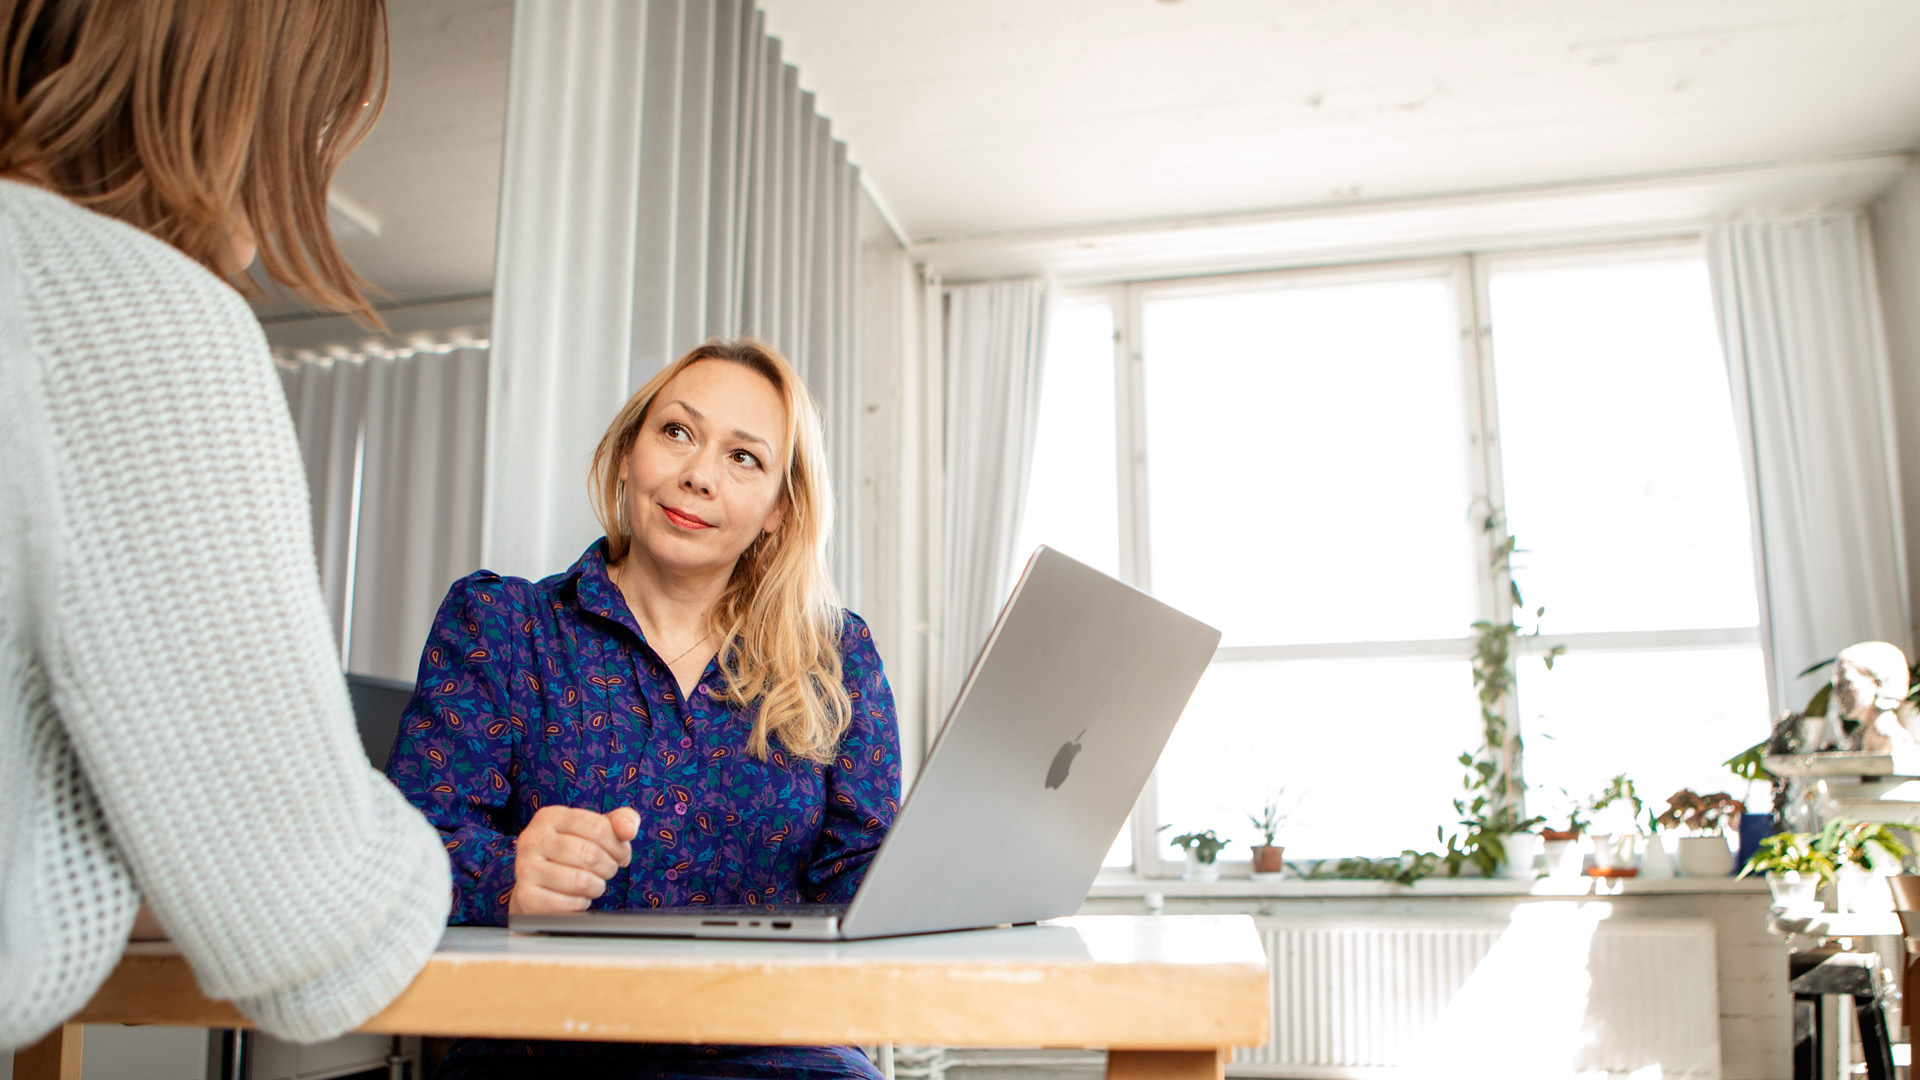 Noon Kollektiivin someviestinnän asiantuntija Anu Dufva sparraa asiakasta tietokoneen ääressä.